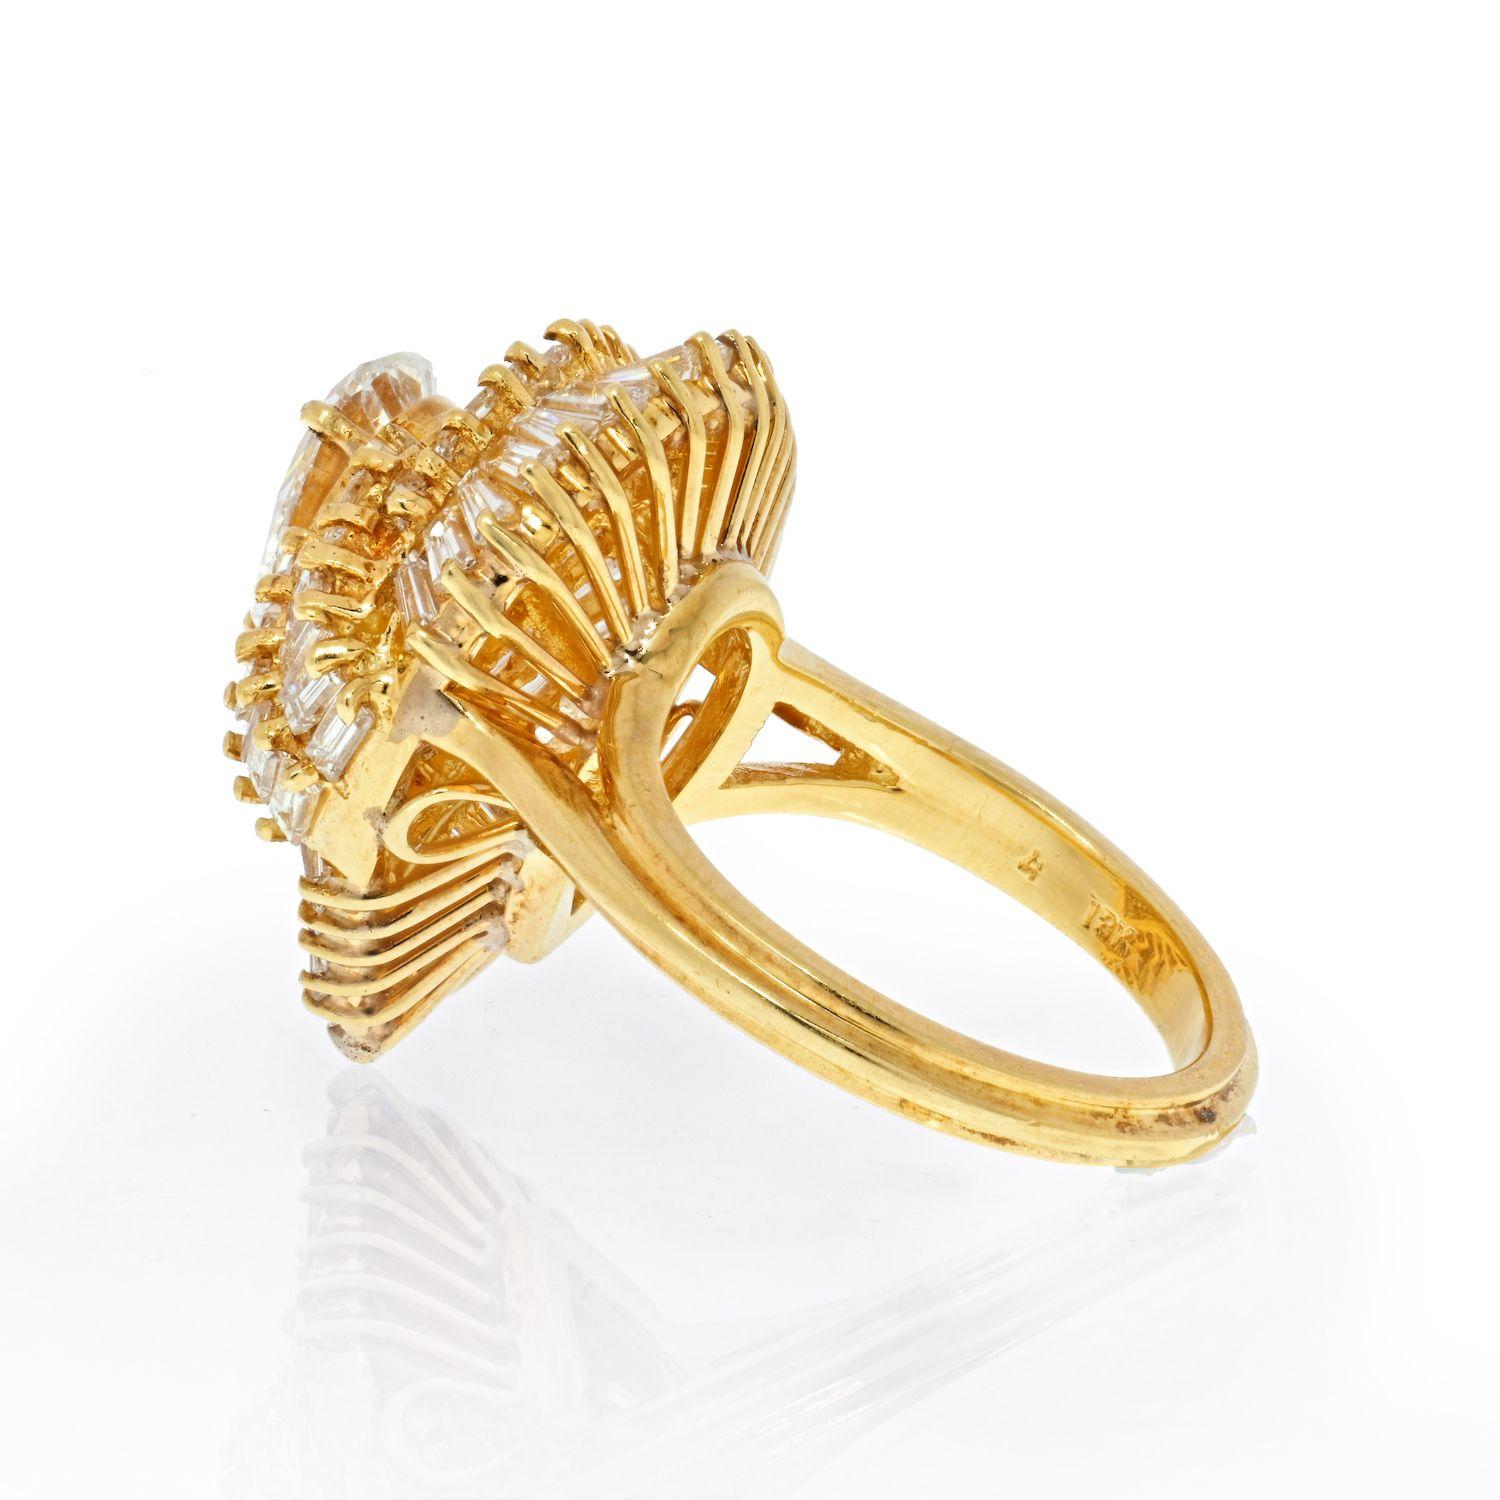 Modern Oscar Heyman 18K Yellow Gold 1.27ct Pear Cut Ballerina Ring